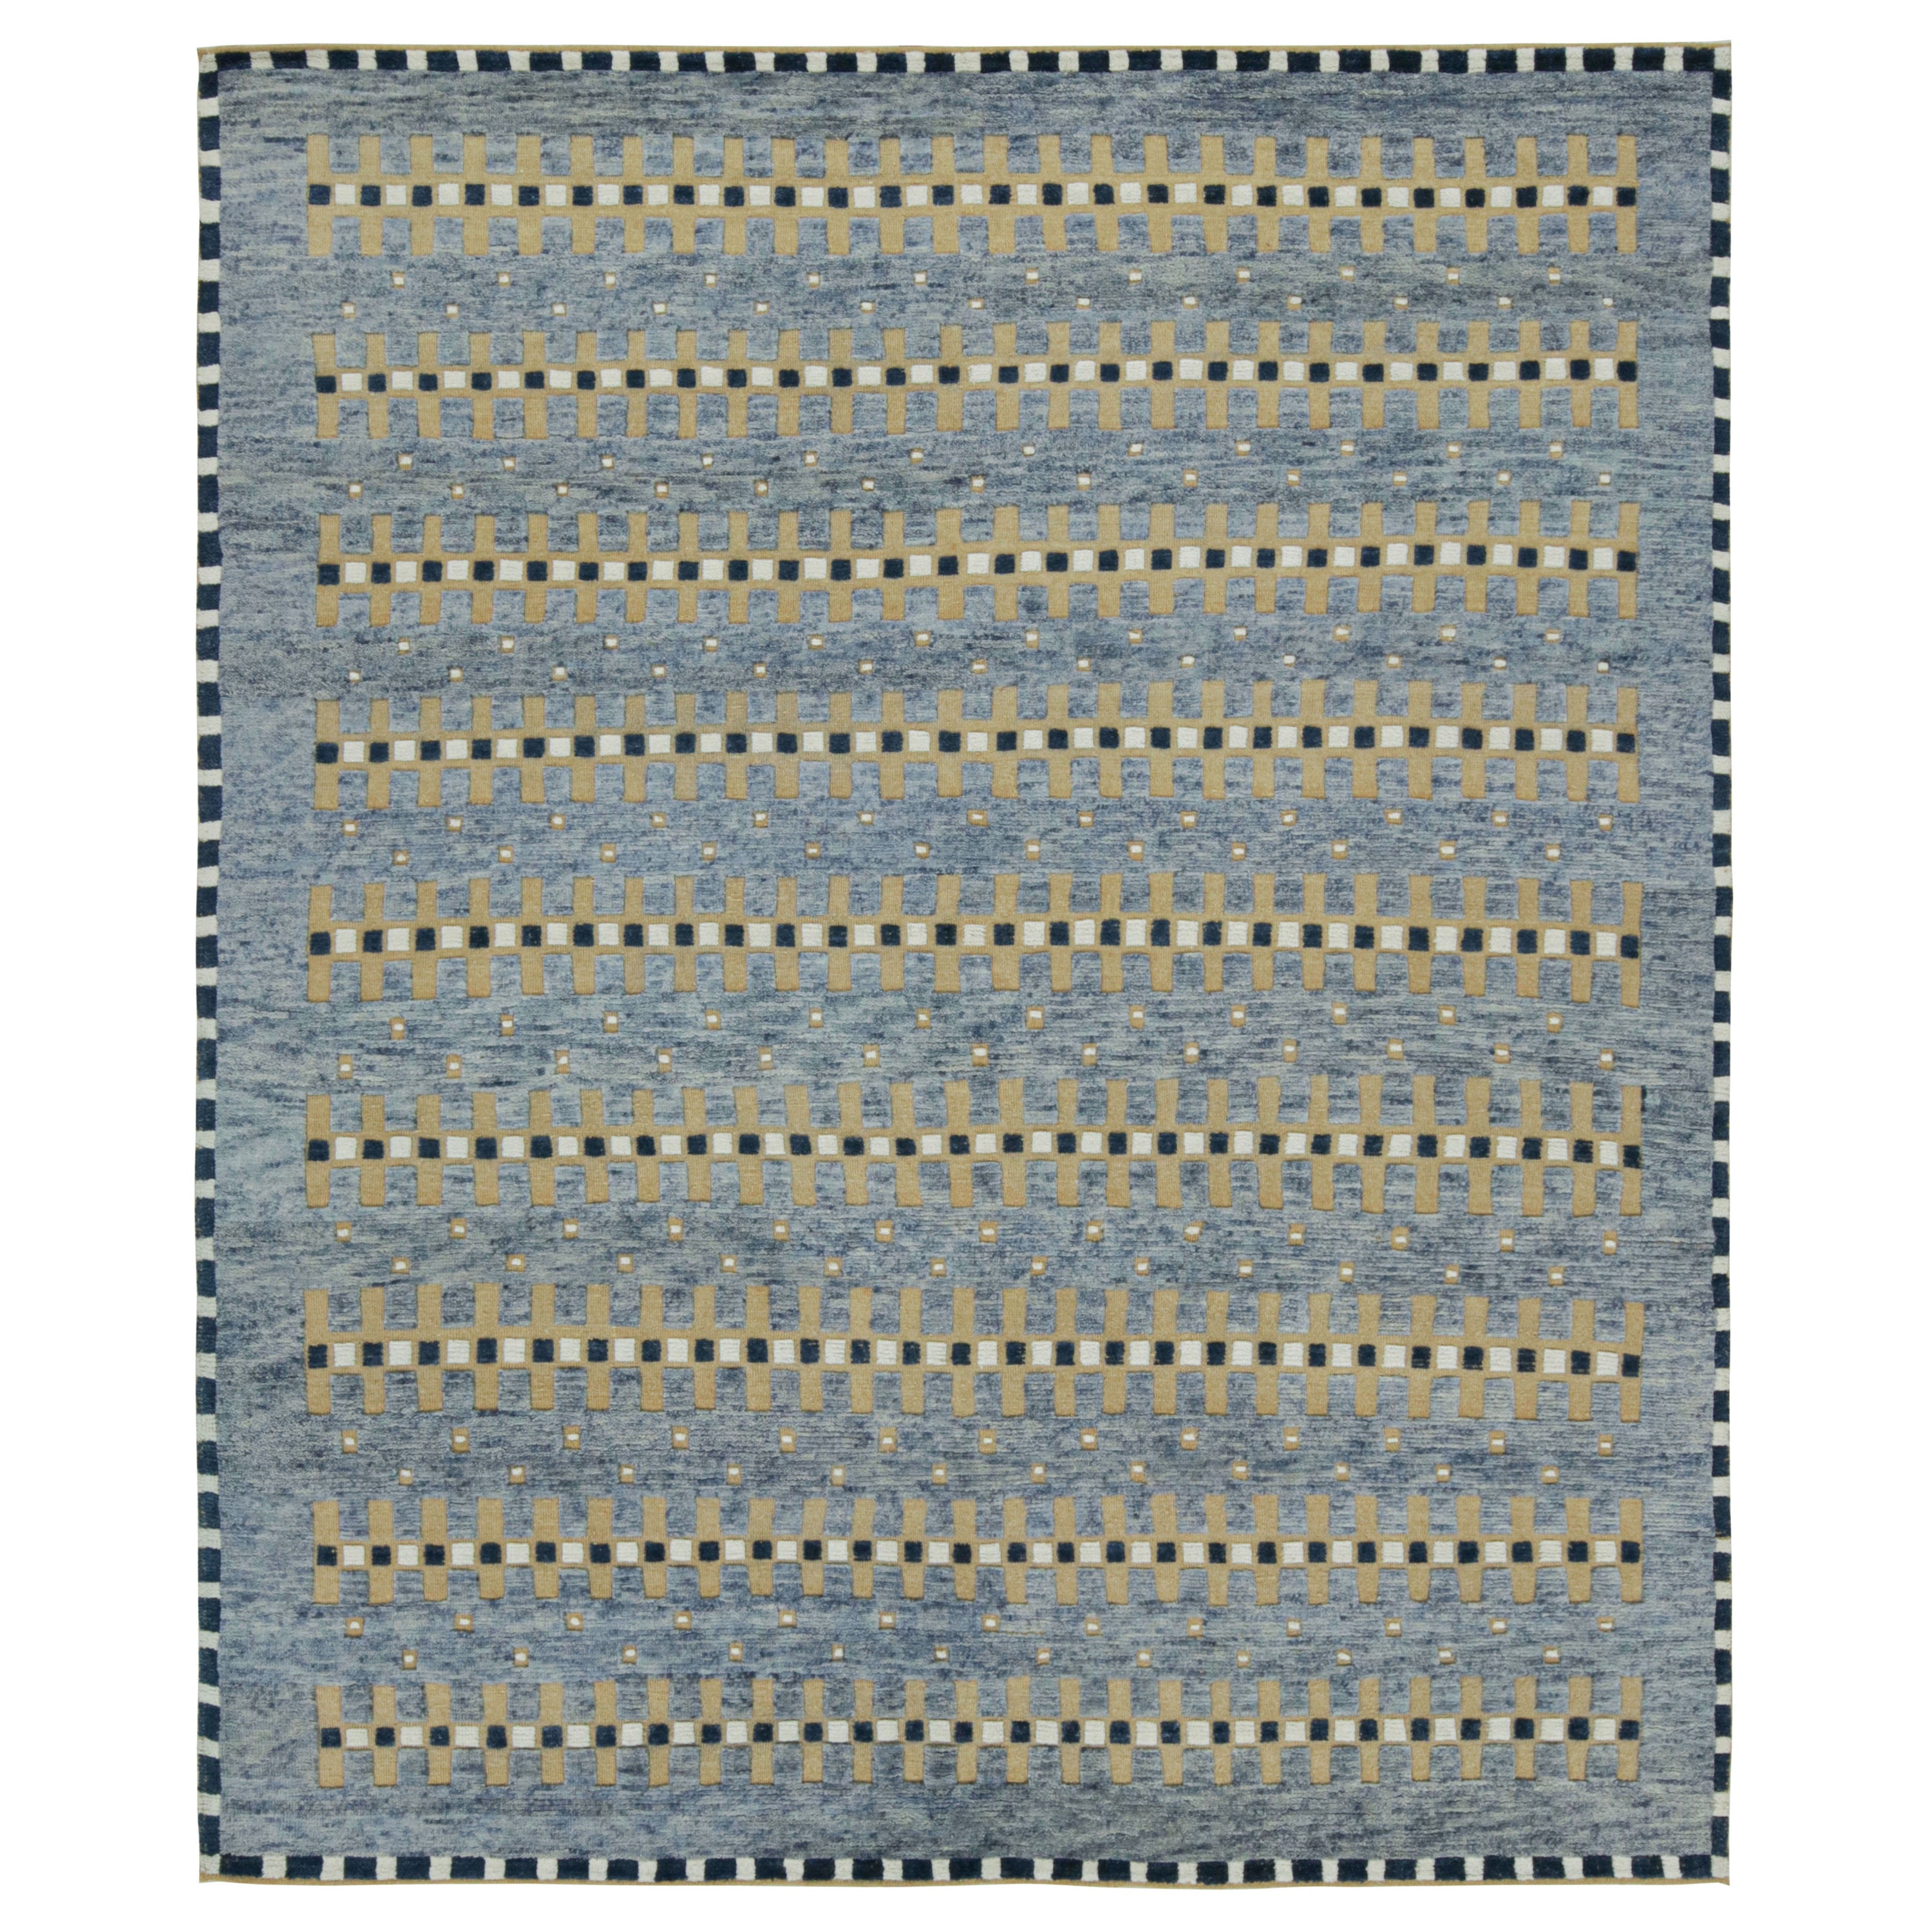 Rug & Kilim's Scandinavian Style Rug in Blue, Beige-Brown Geometric Patterns (tapis de style scandinave à motifs géométriques bleus, beiges et bruns)